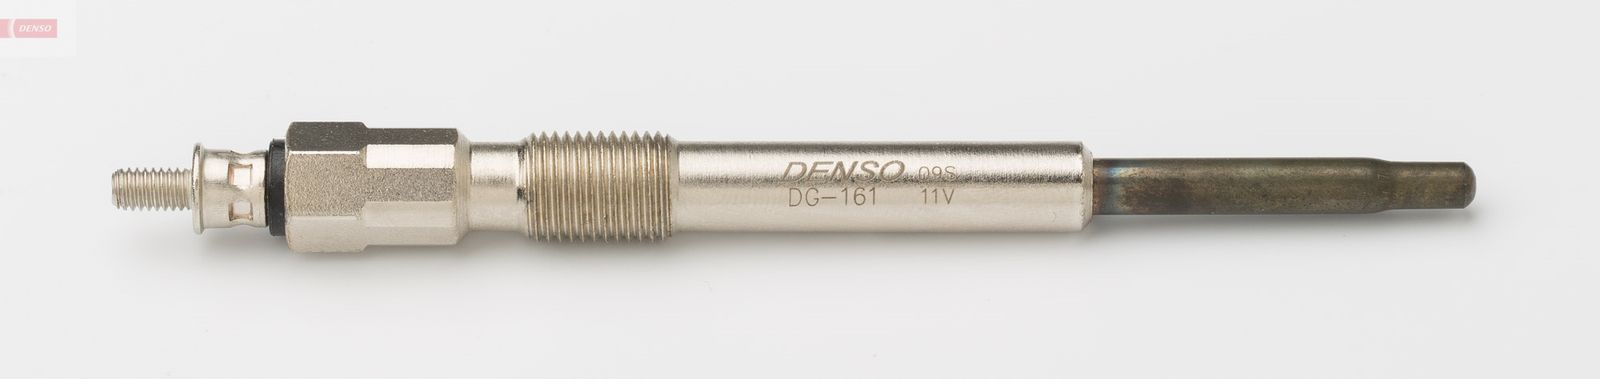 Žhavící svíčka DENSO DG-161